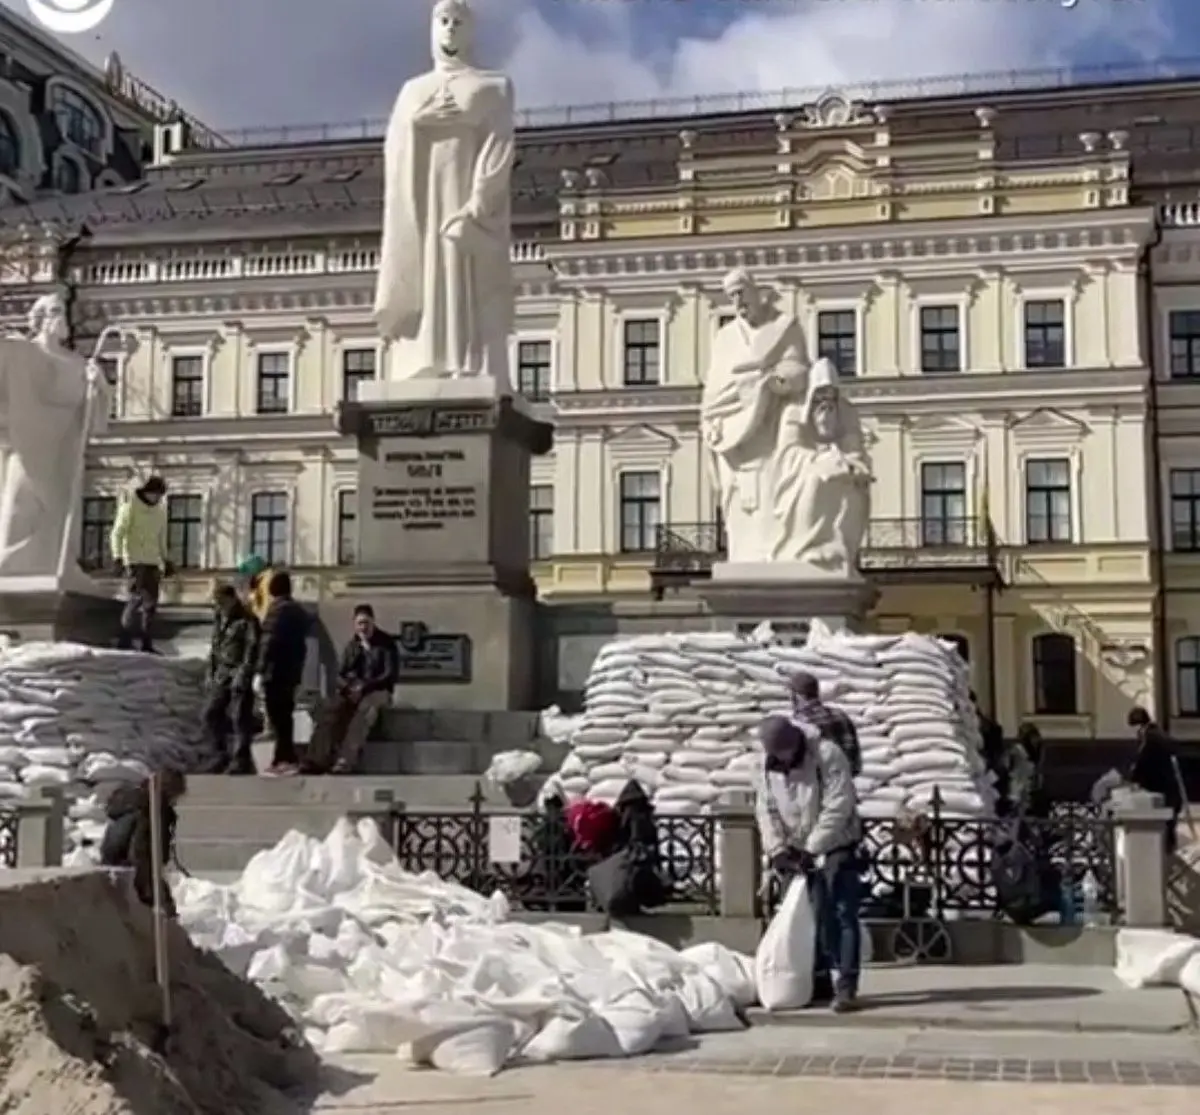 اوکراین | تلاش مردم کی‌اف برای محافظت از مجسمه‌ها و بناهای تاریخی شهرشان